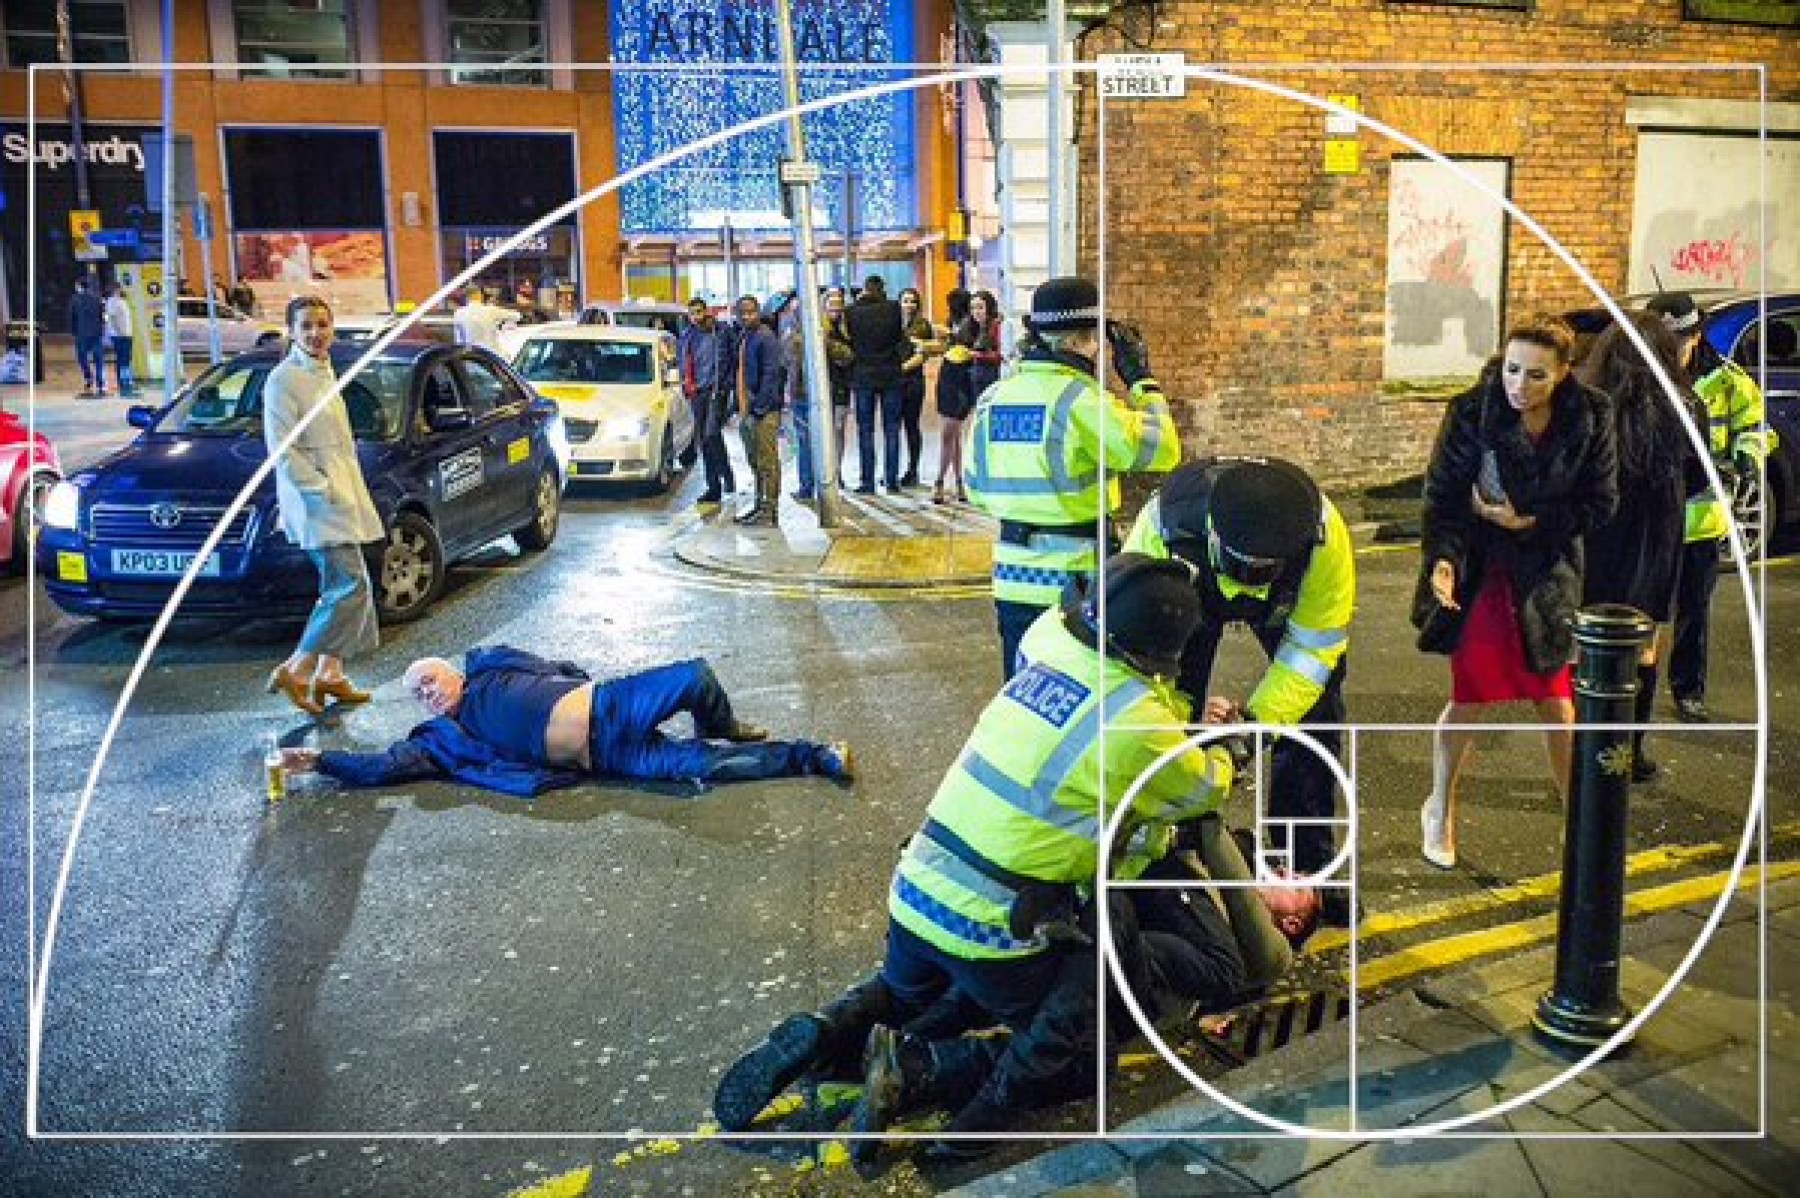 Пользователи интернета нашли фотографию пьяных лондонцев исполненной художественного смысла